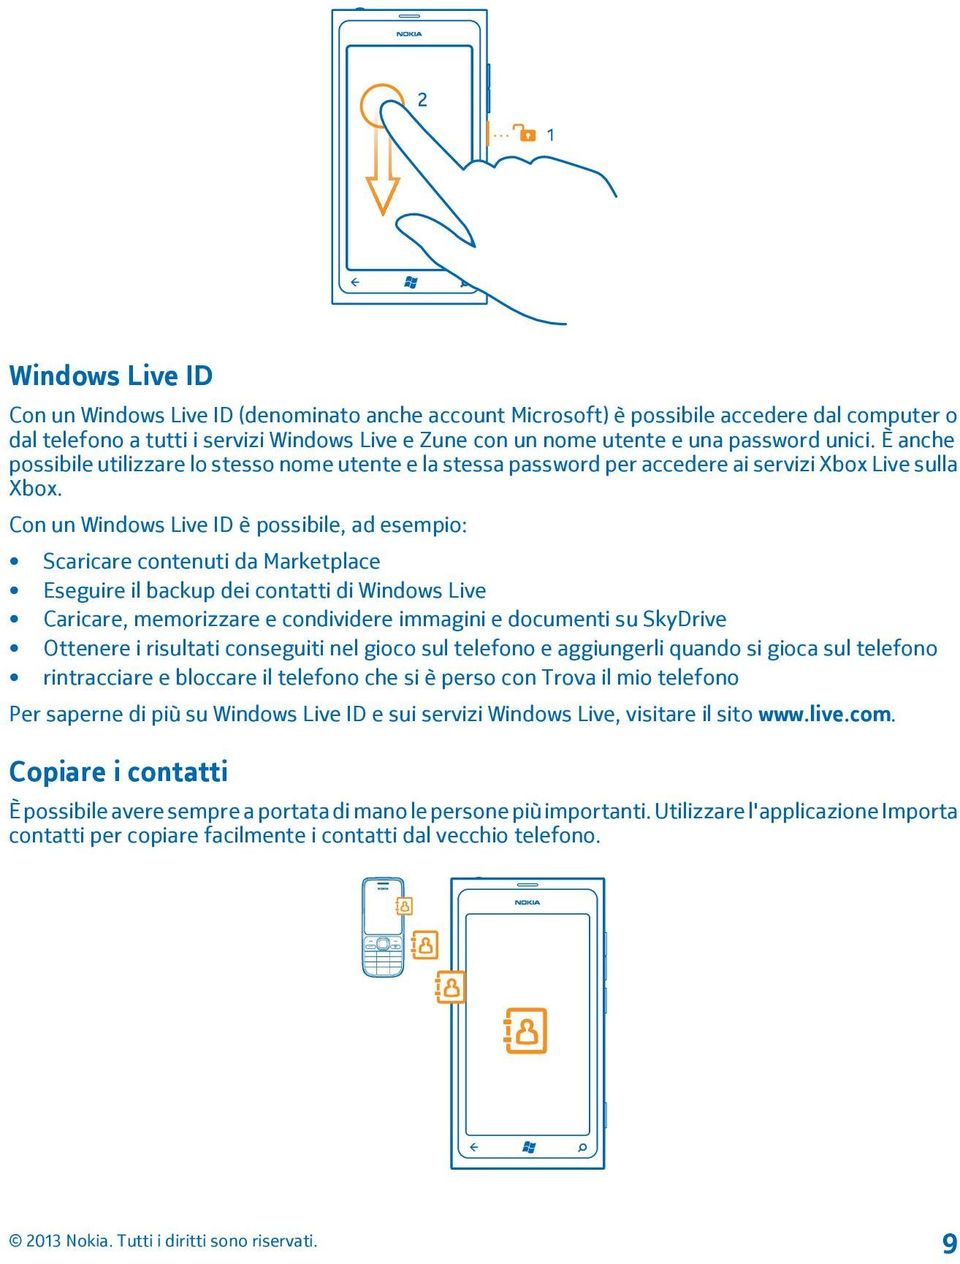 Con un Windows Live ID è possibile, ad esempio: Scaricare contenuti da Marketplace Eseguire il backup dei contatti di Windows Live Caricare, memorizzare e condividere immagini e documenti su SkyDrive